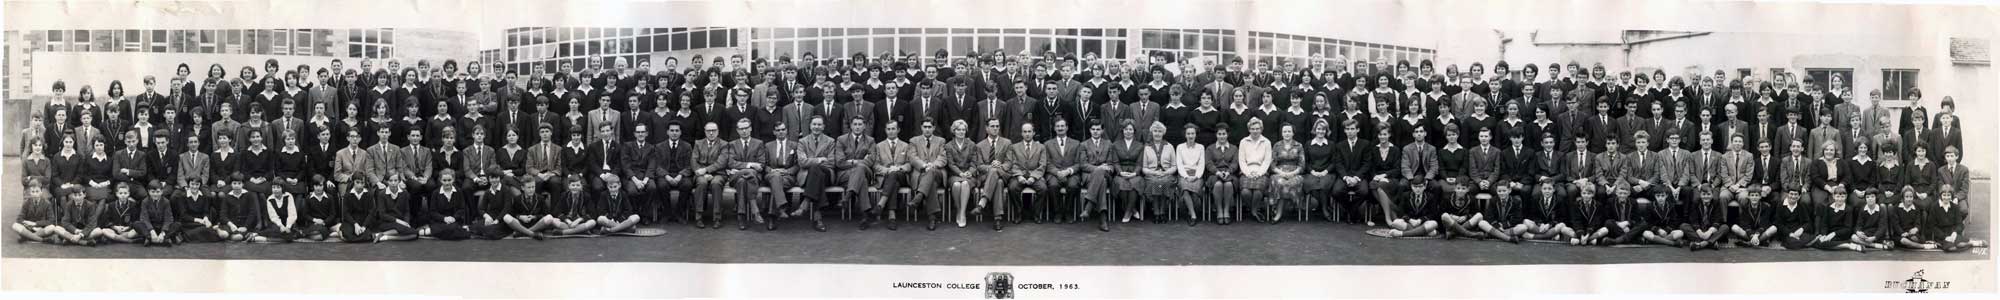 Launceston College 1963-64.